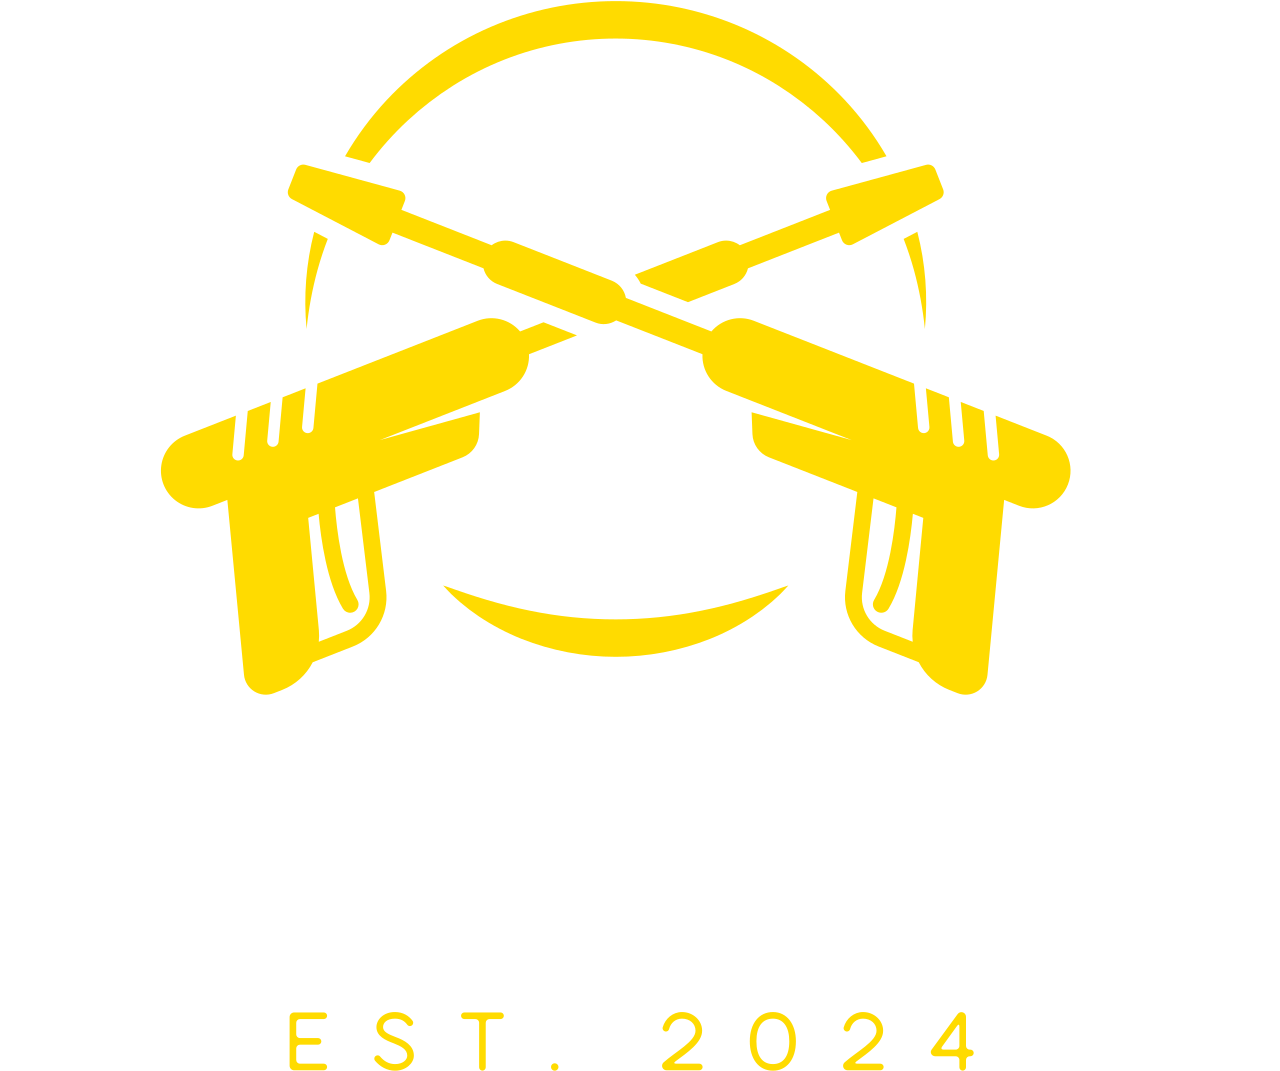 Pure Pressure's logo